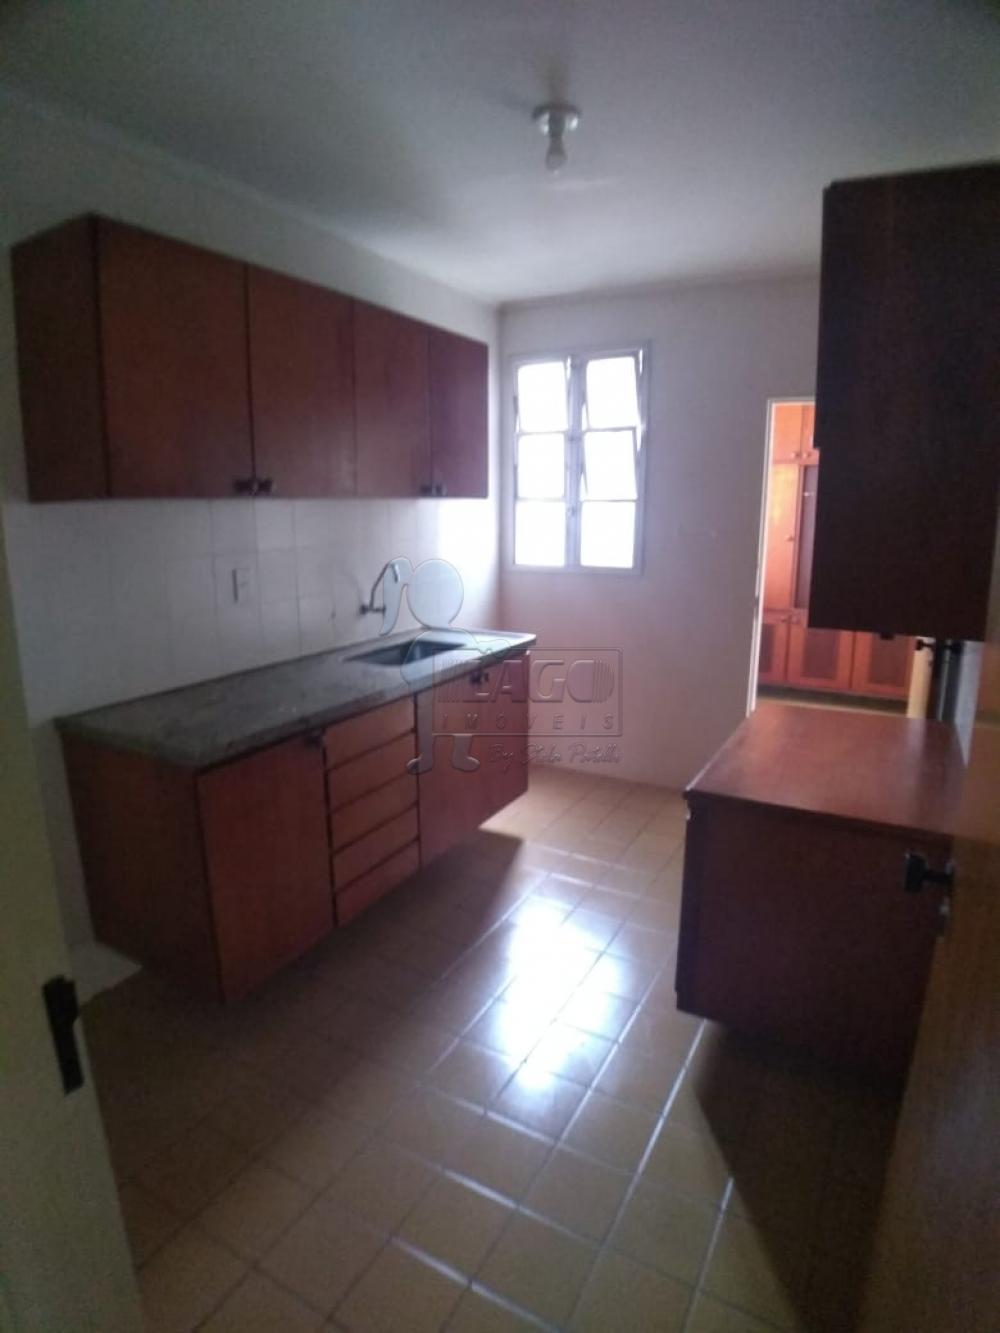 Alugar Apartamentos / Padrão em Ribeirão Preto R$ 1.950,00 - Foto 12